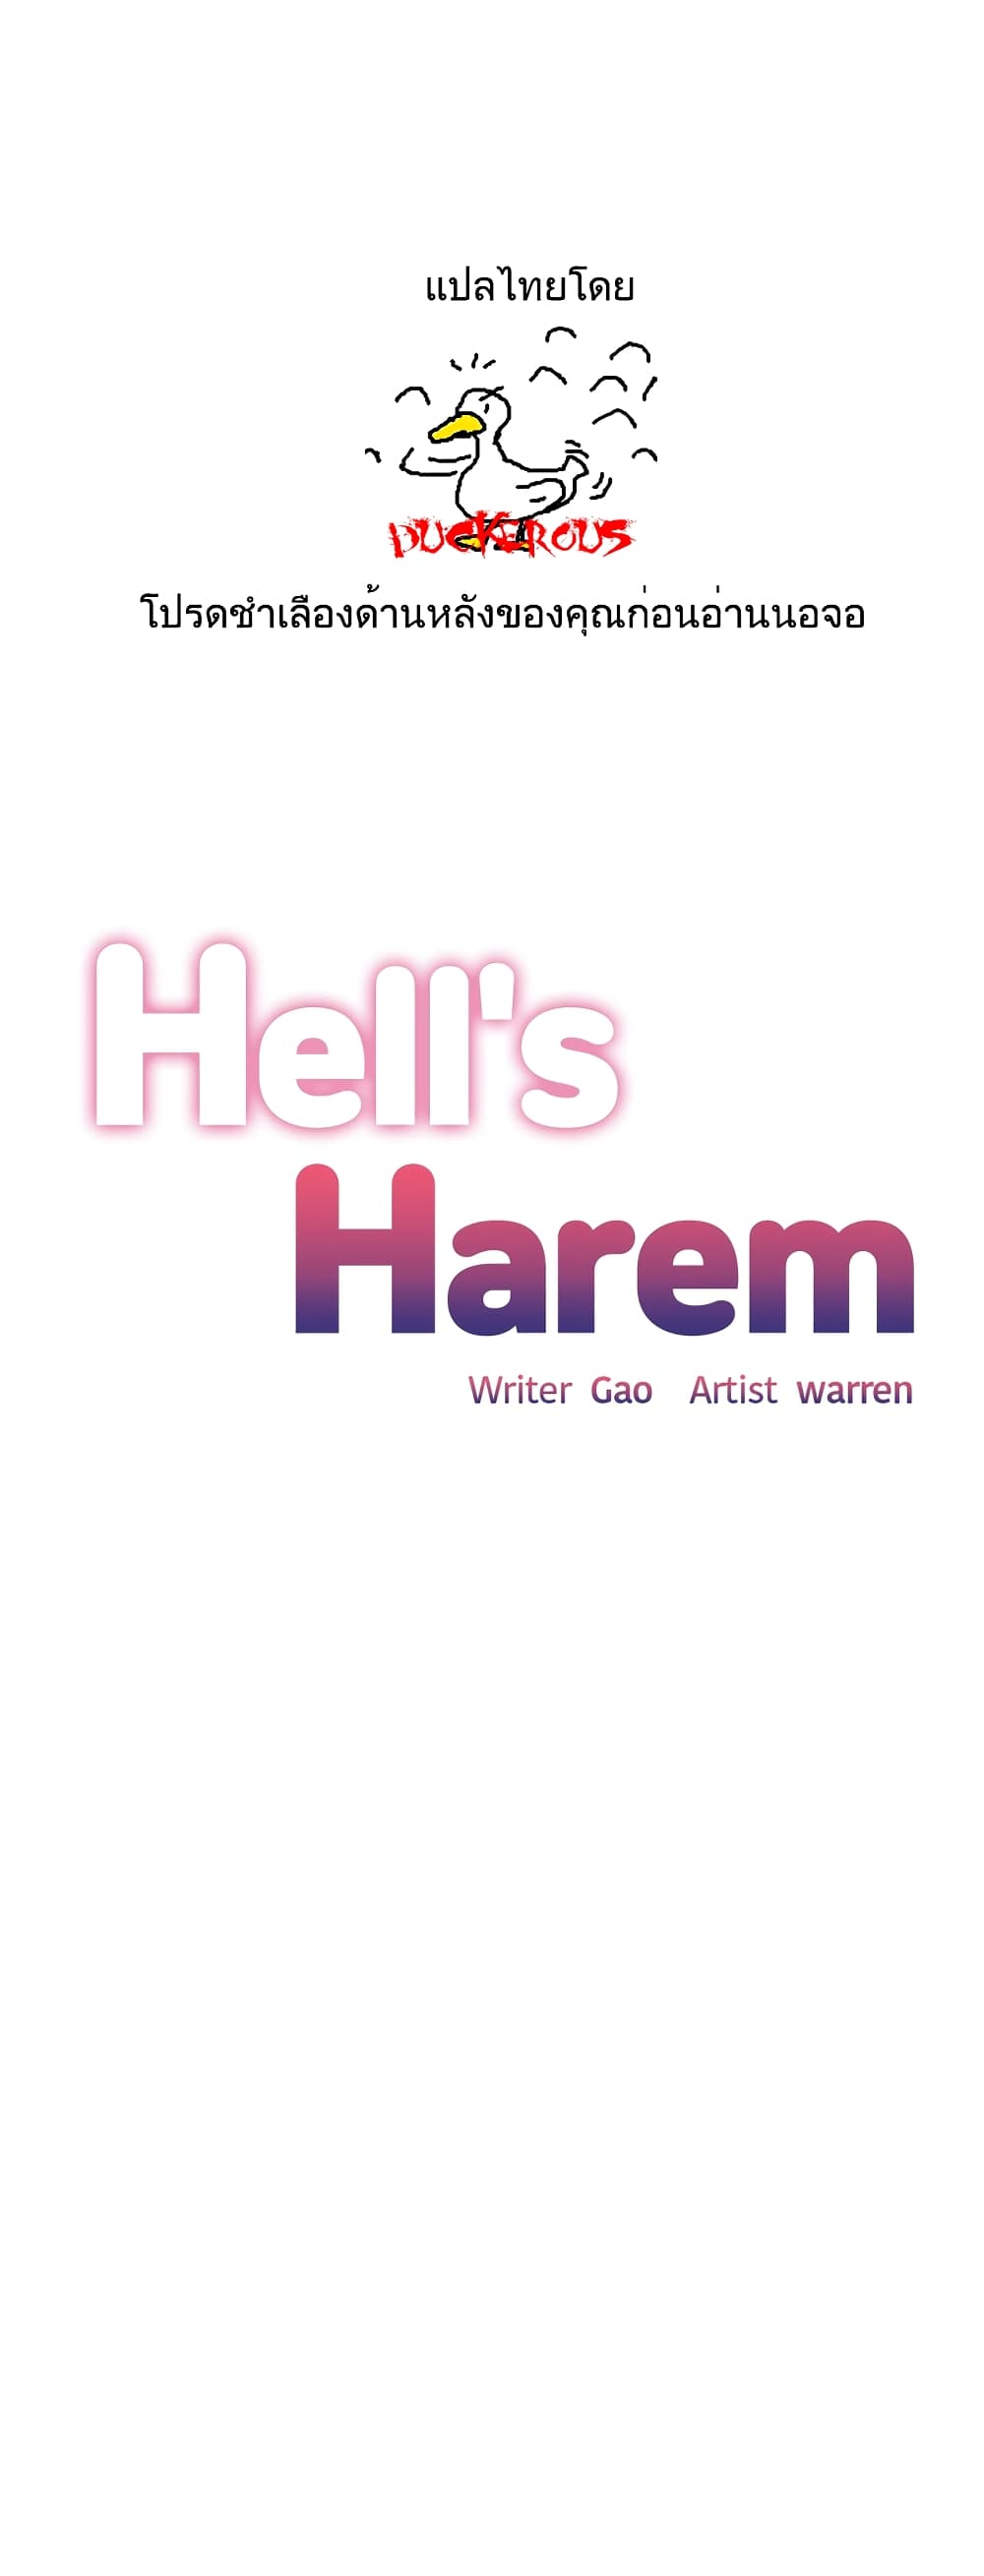 Hell’s Harem 30 (1)